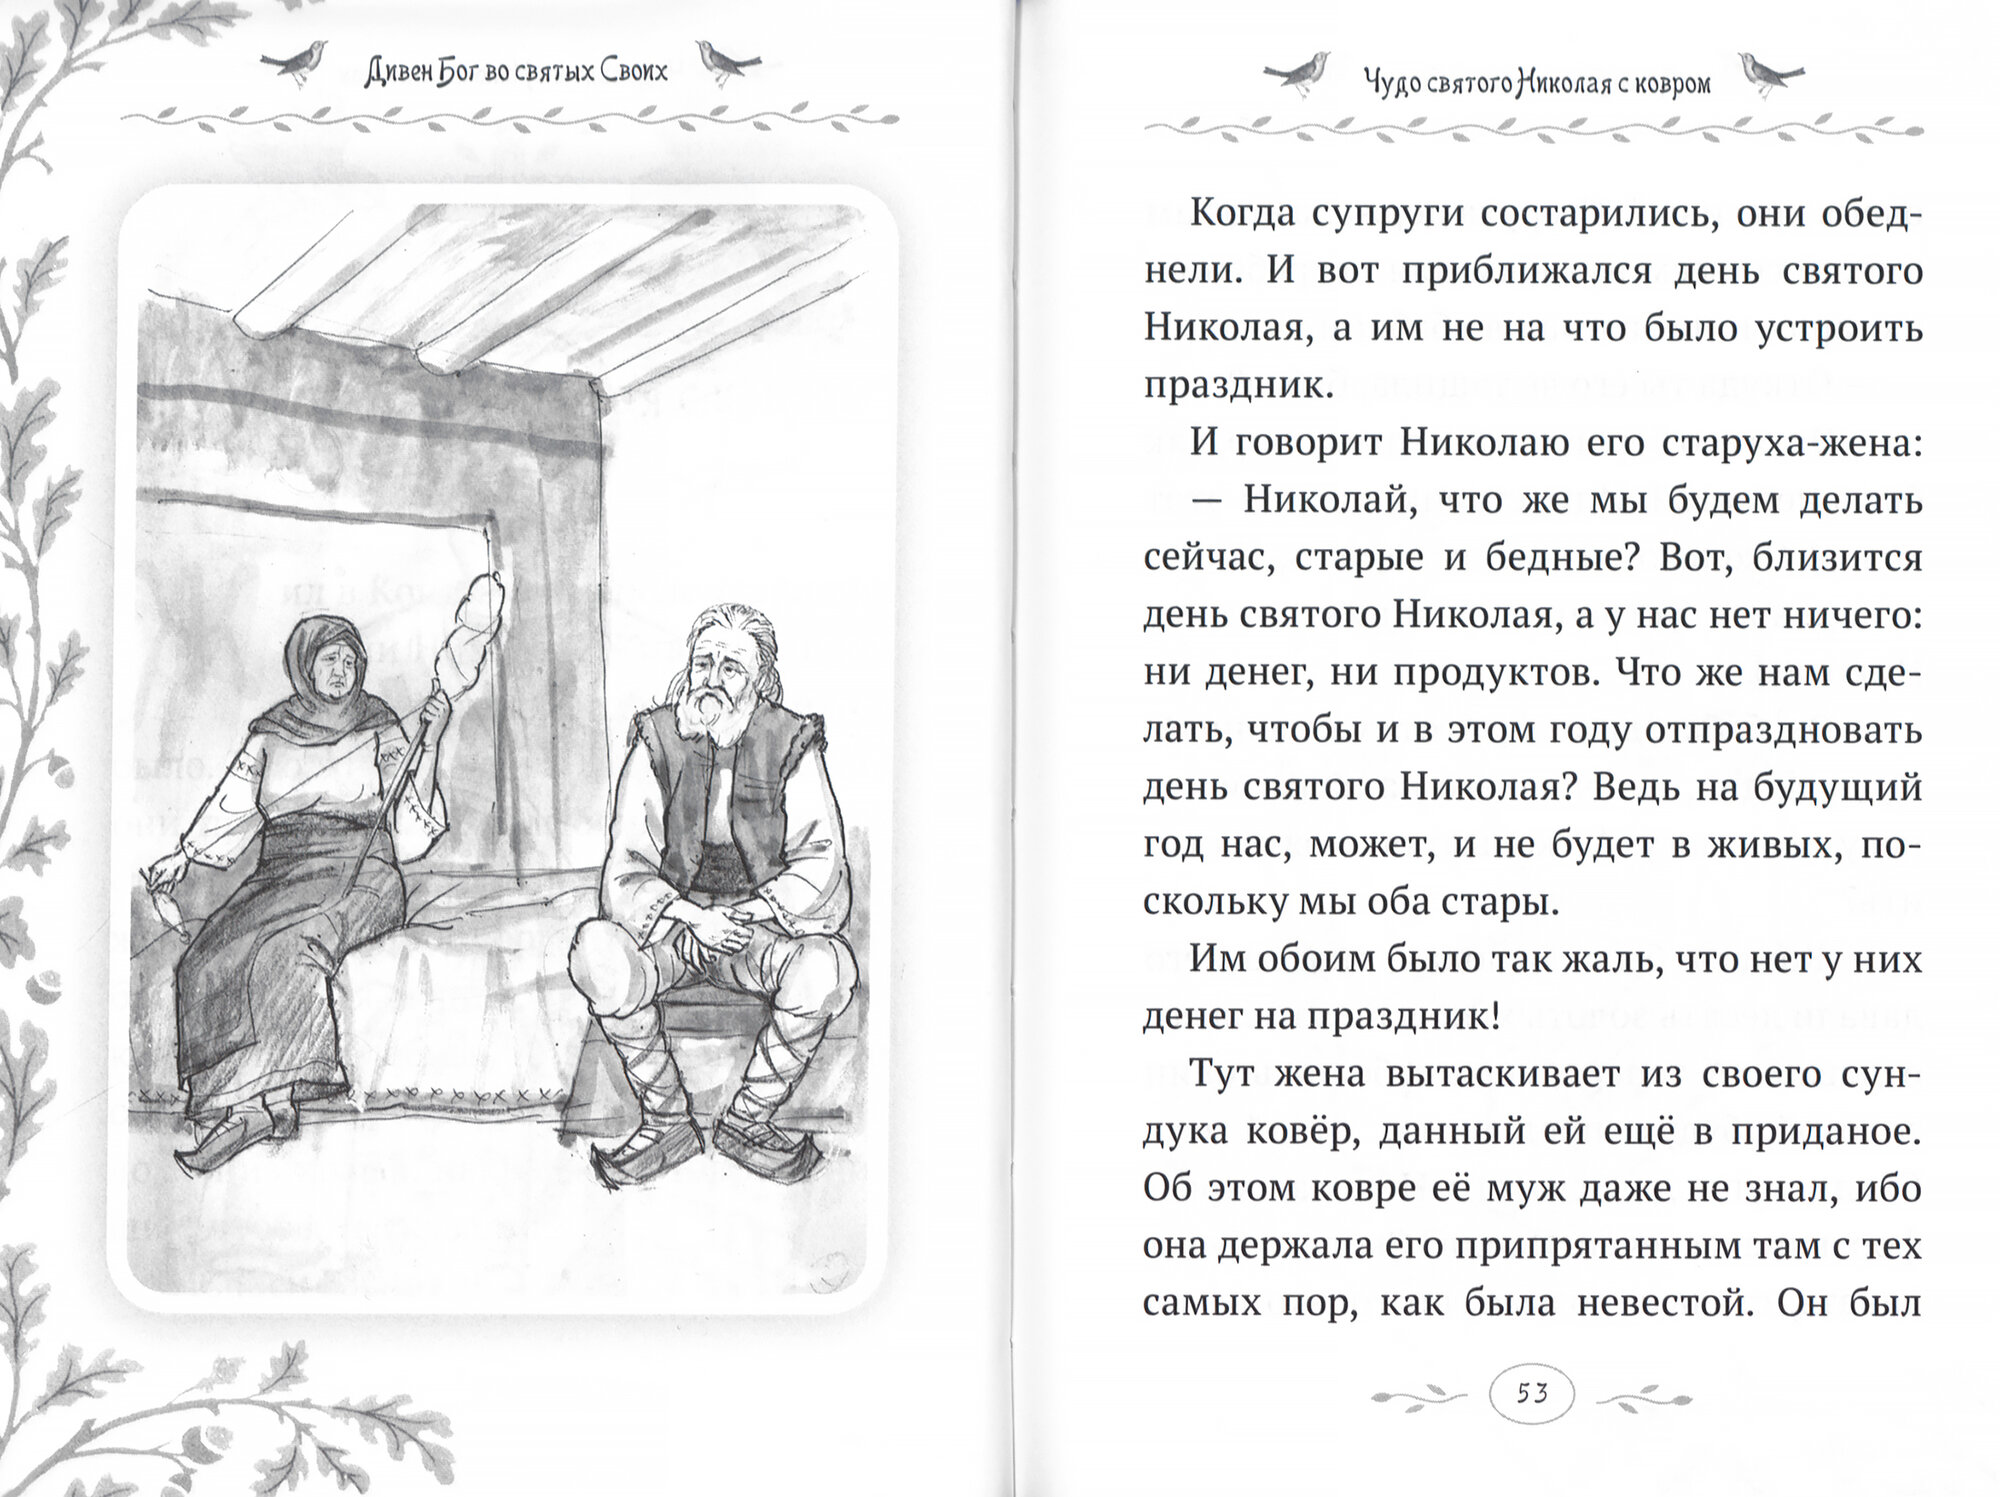 Дивен Бог во святых Своих. Истории румынского старца для детей и взрослых - фото №3